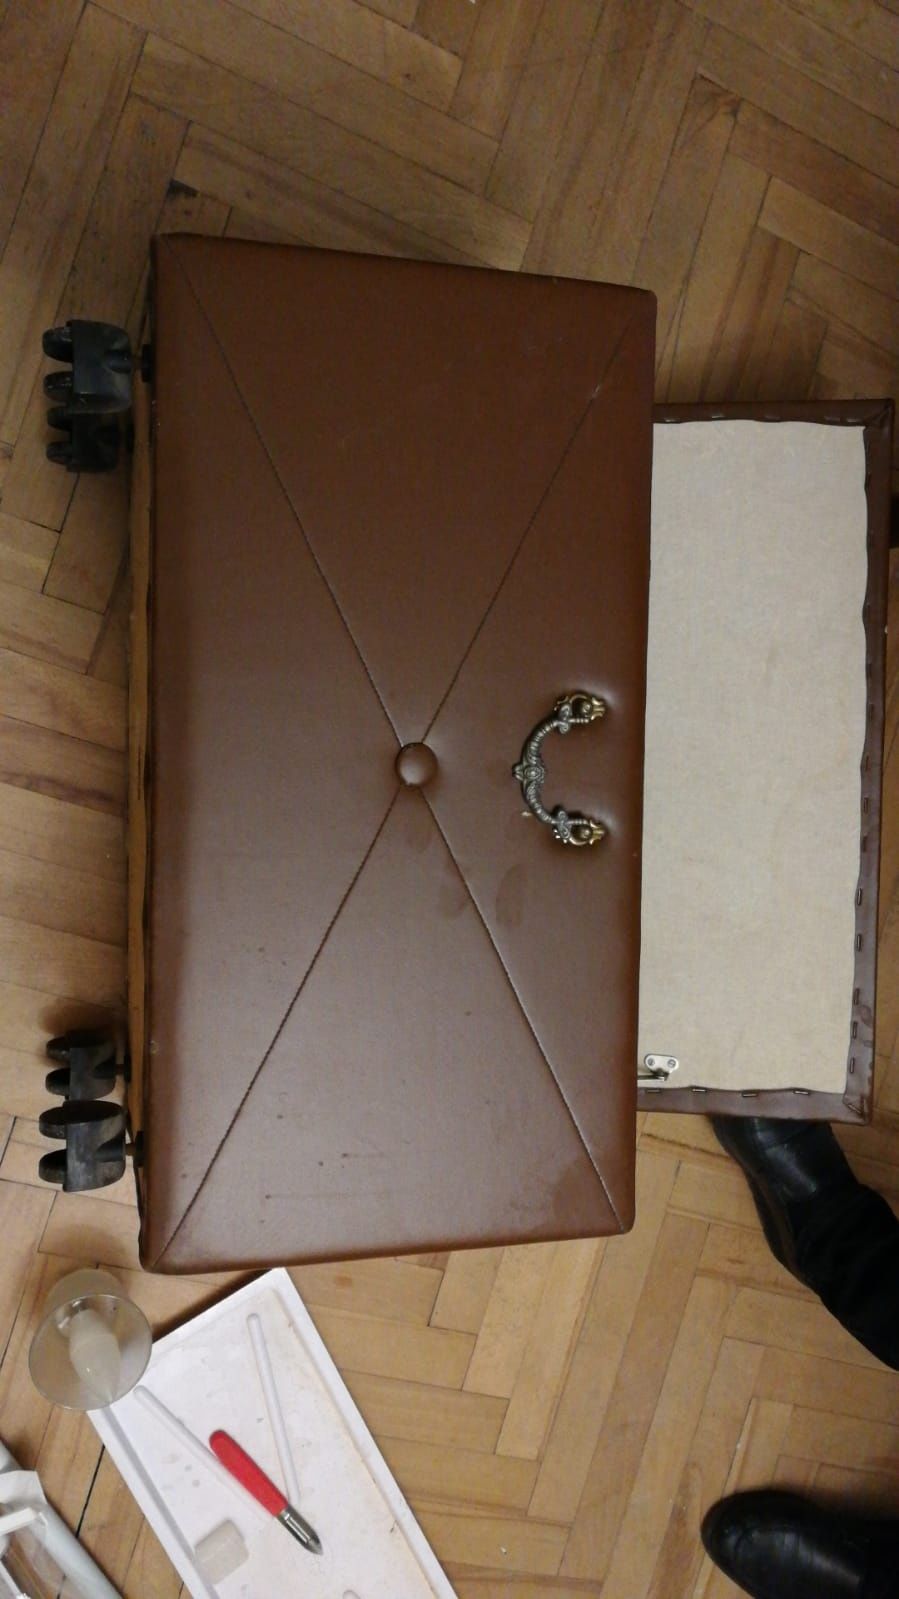 Skrzynia kufer pufa ławka pikowana na kółkach